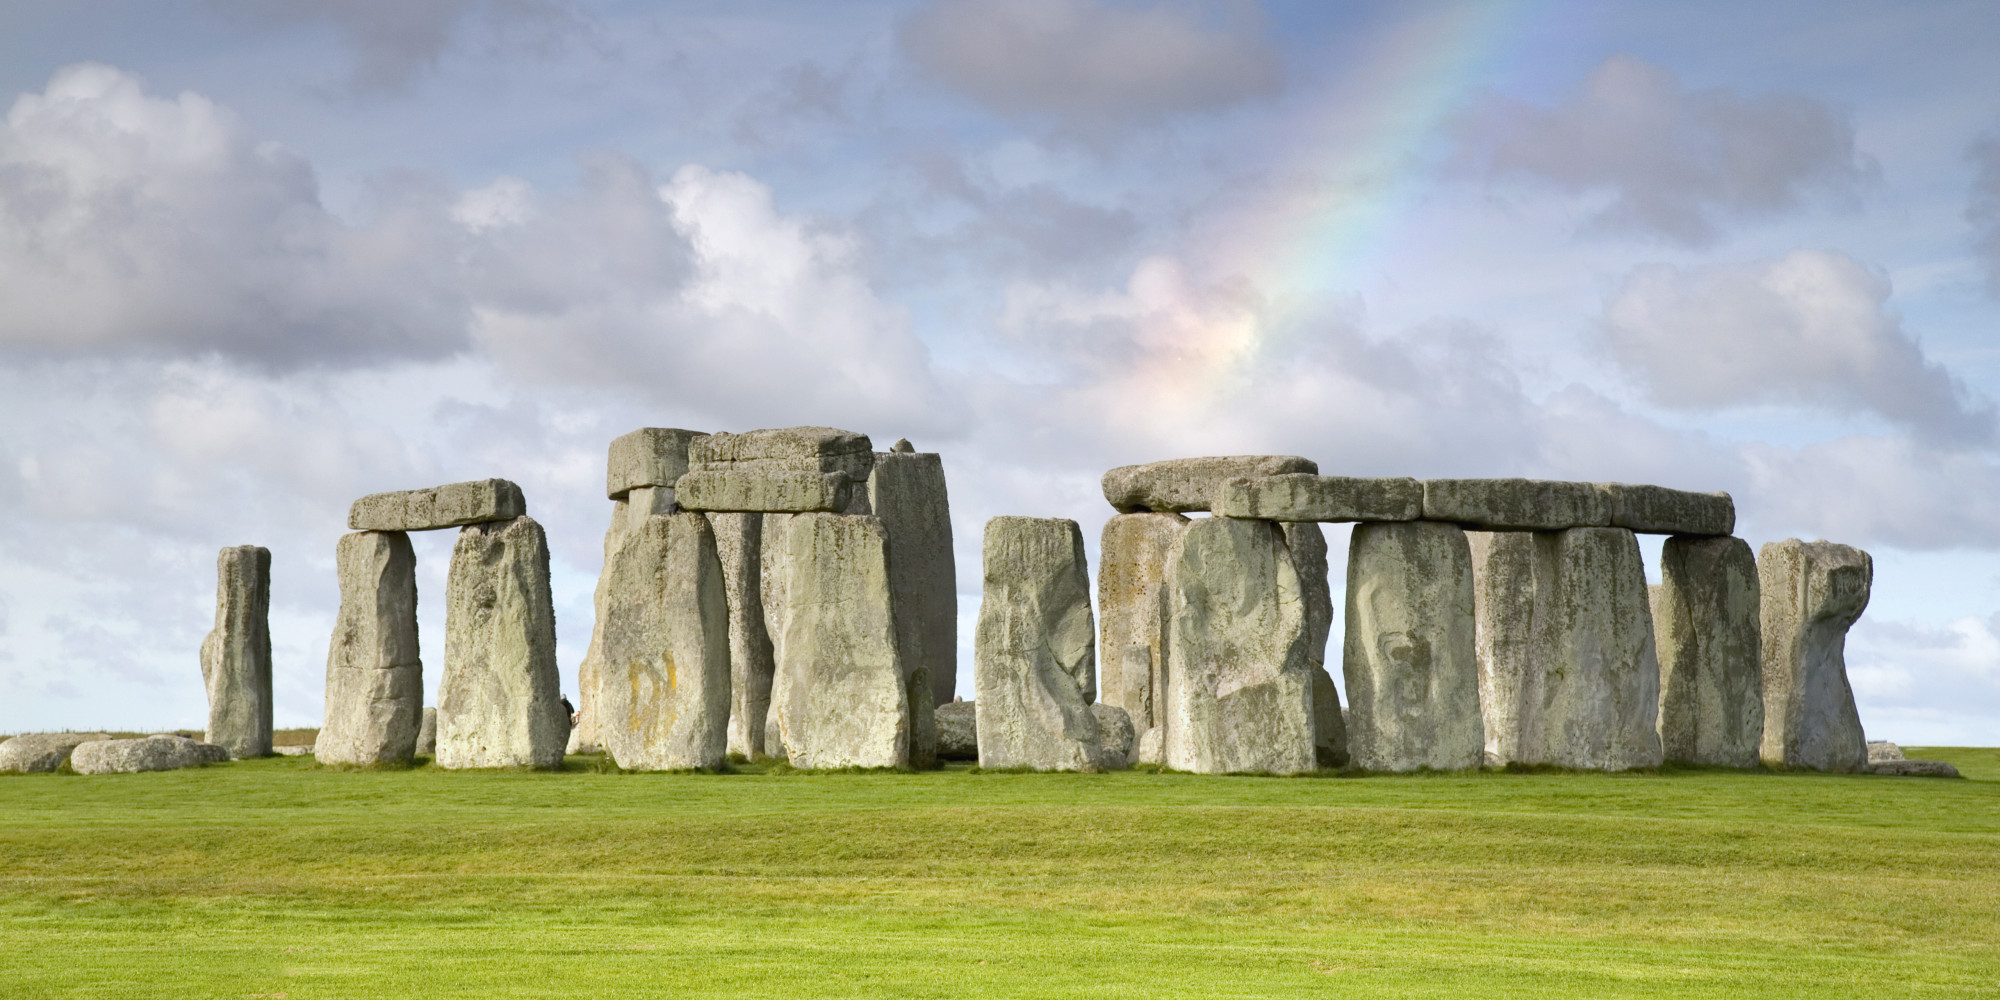 Stonehenge merupakan tempat wisata keduapuluh empat yang dapat dikunjungi apabila Anda datang ke Inggris Stonehenge merupakan salah satu situs sejarah di